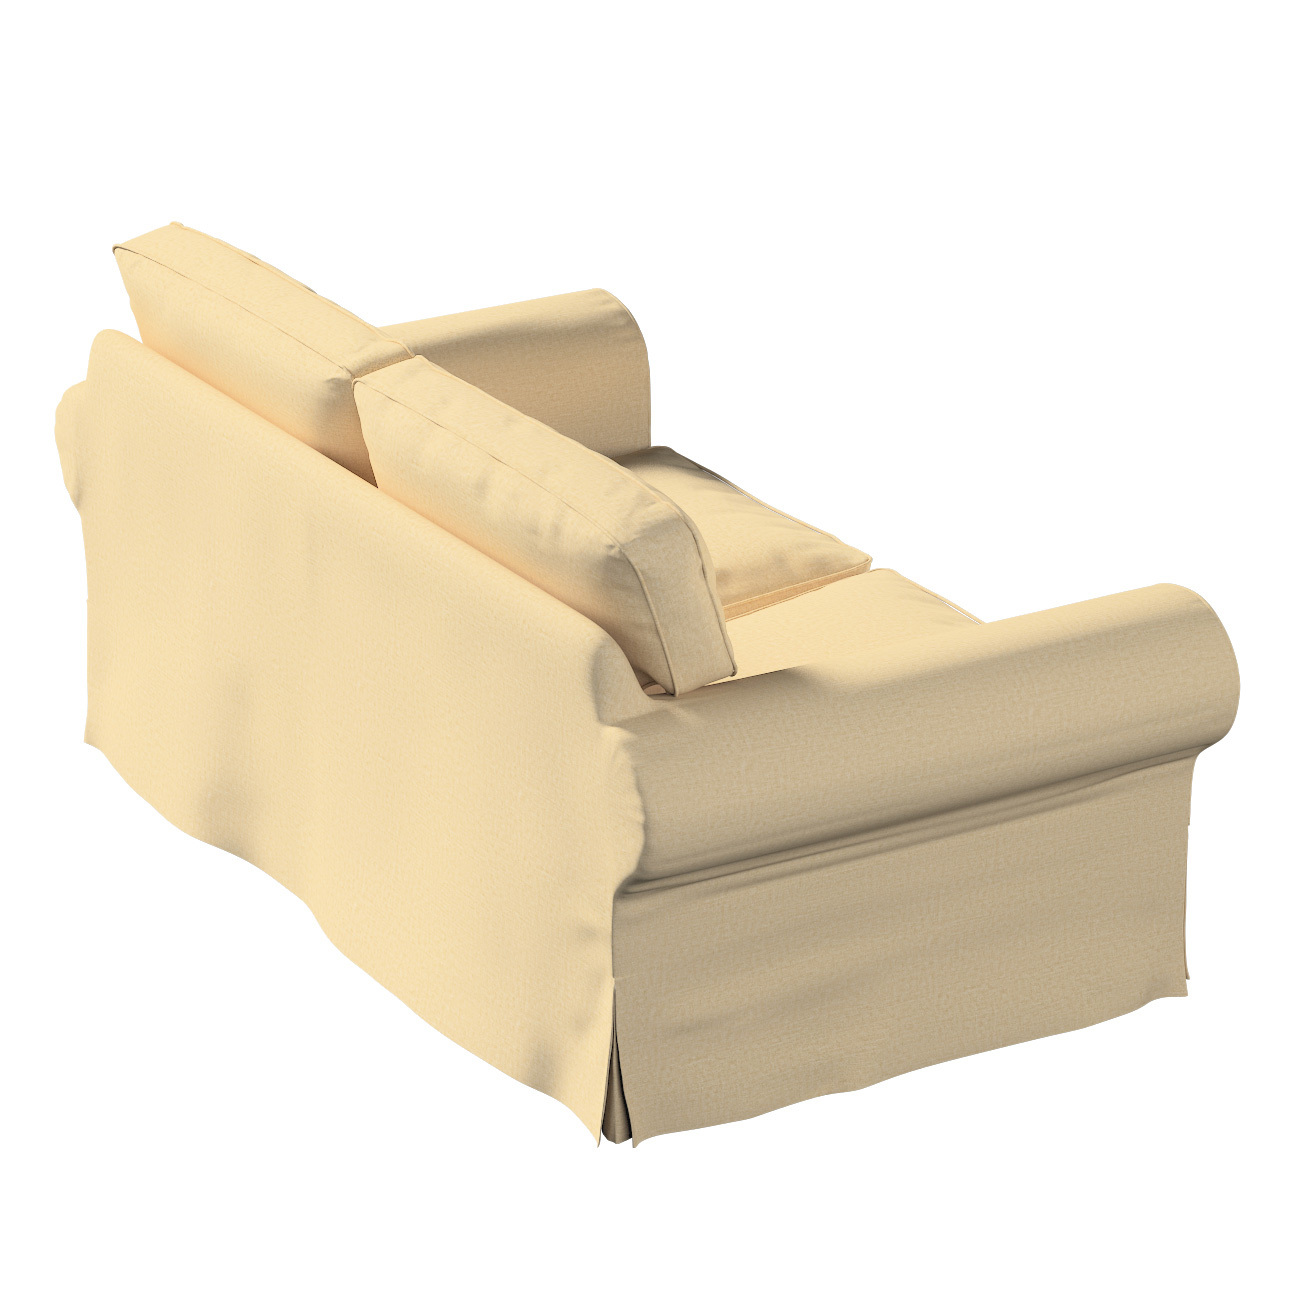 Bezug für Ektorp 2-Sitzer Schlafsofa NEUES Modell, sandfarben, Sofabezug fü günstig online kaufen